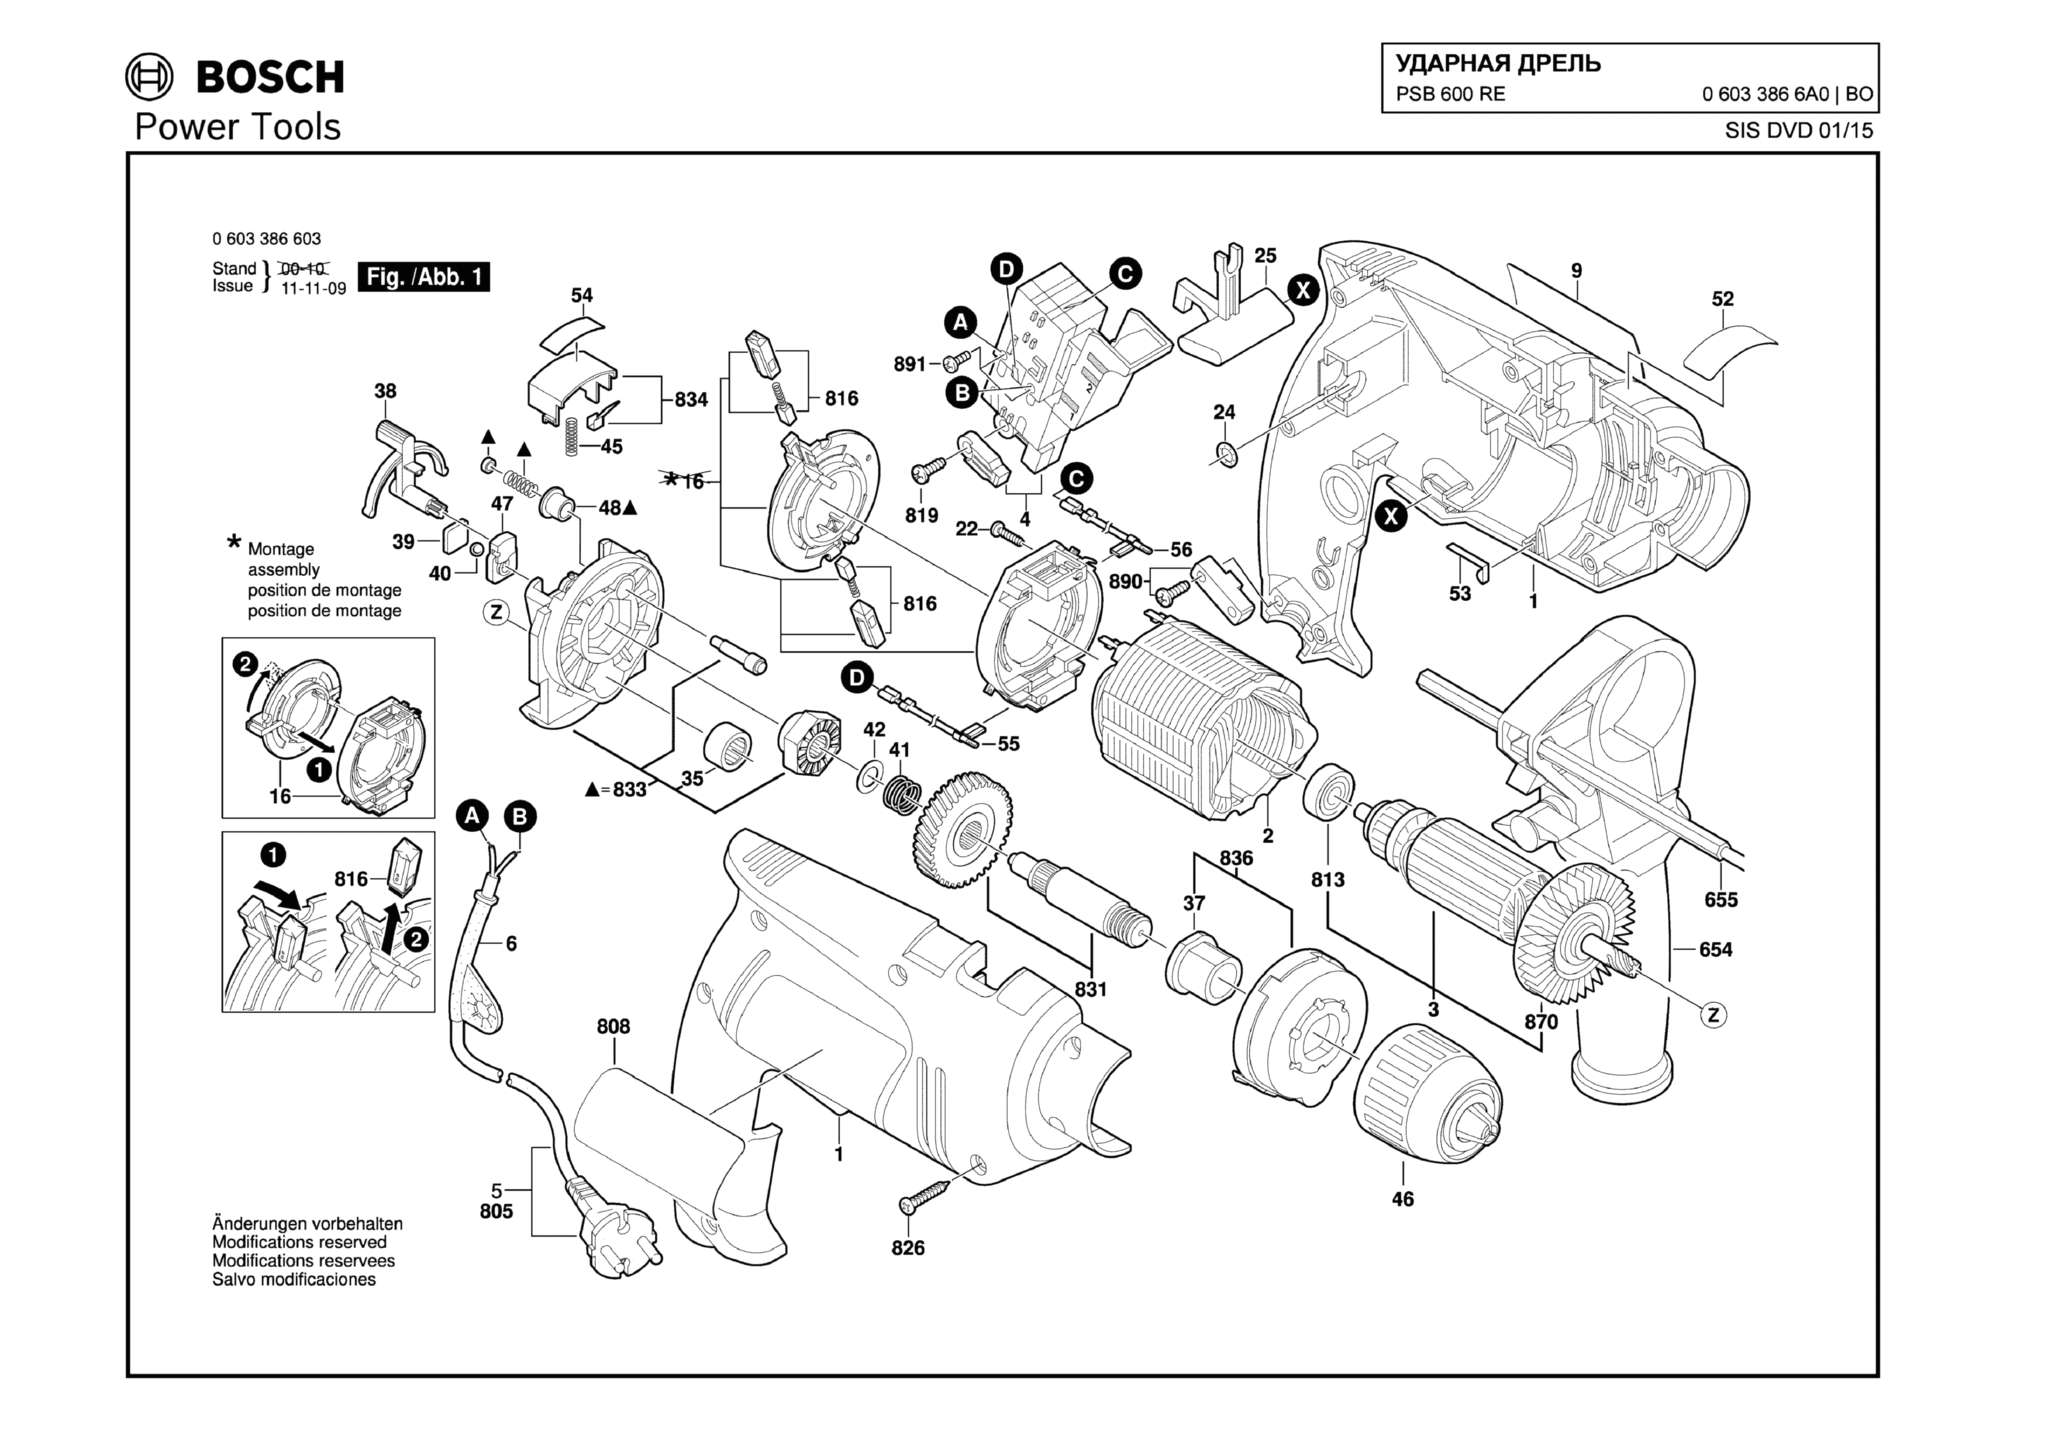 Запчасти, схема и деталировка Bosch PSB 600 RE (ТИП 06033866A0)